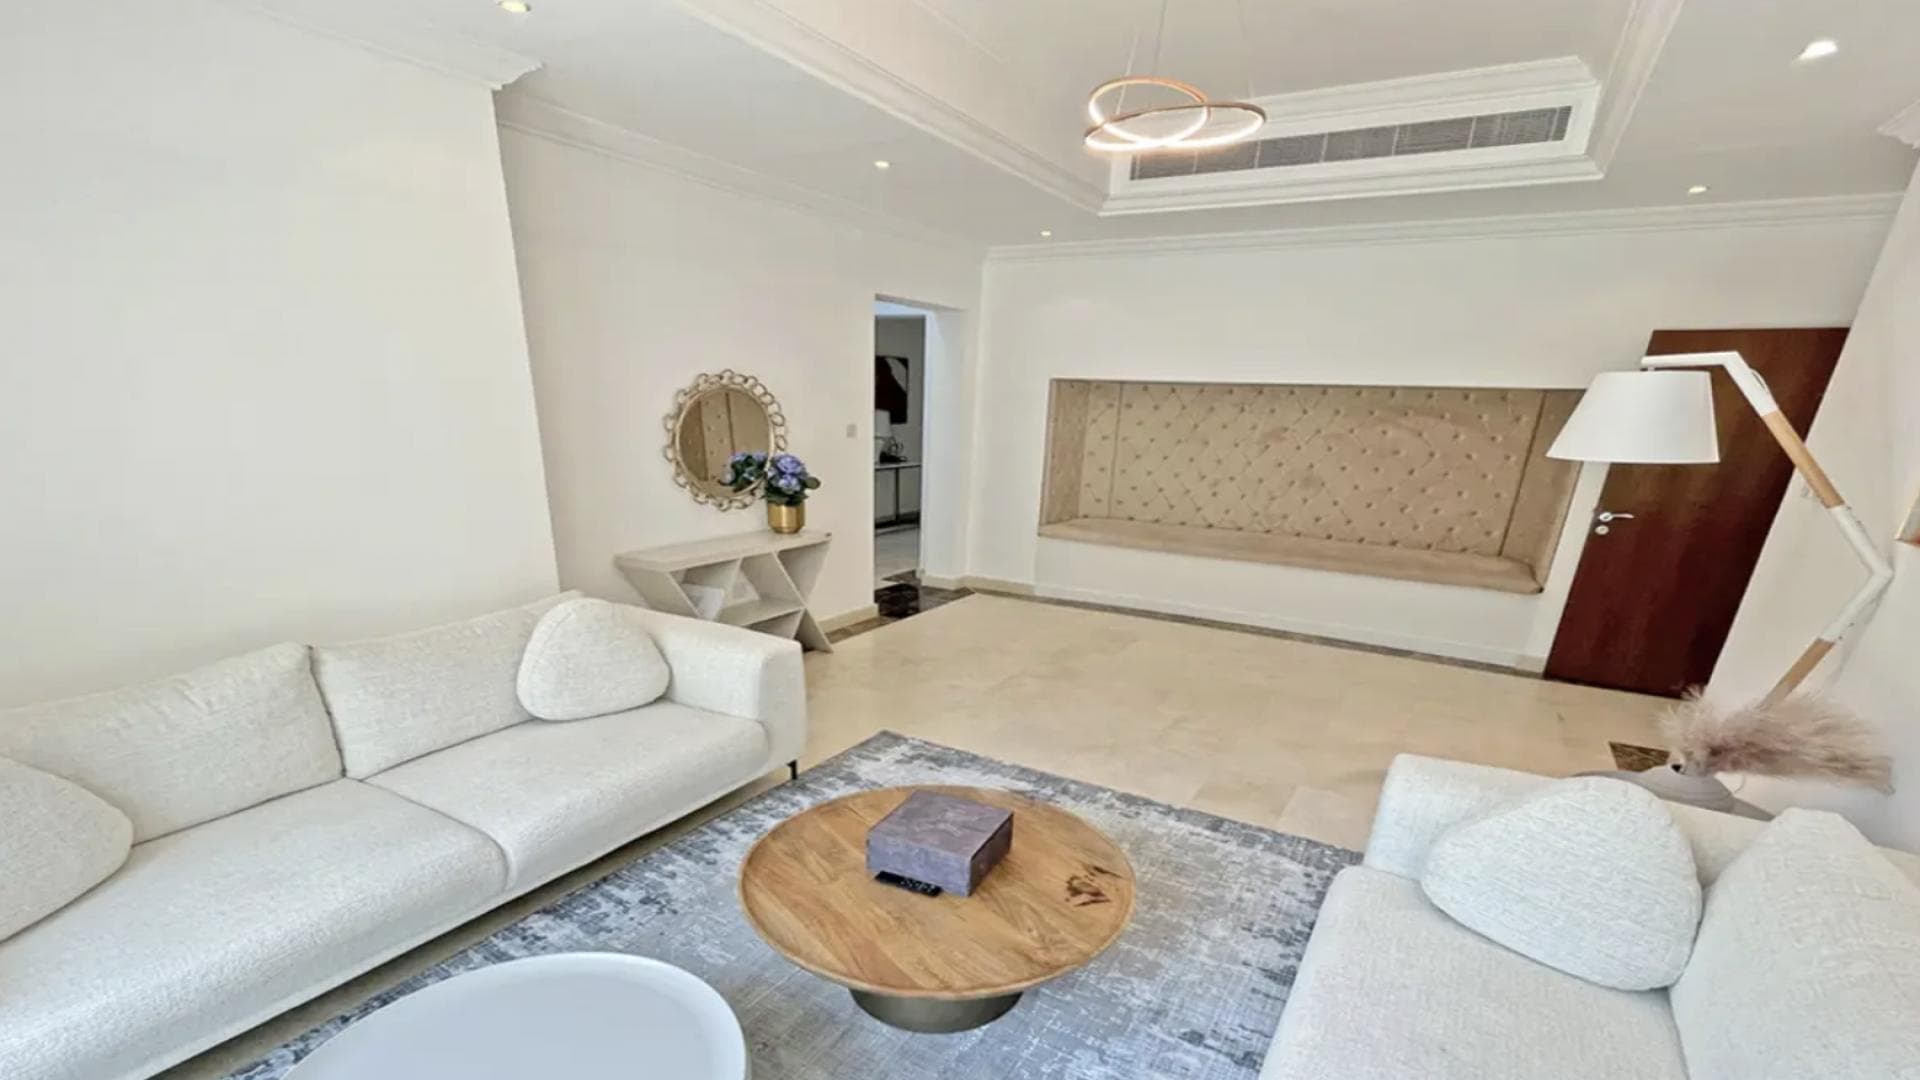 4 Bedroom Villa For Rent Al Thamam 13 Lp37961 2755f169ecd2c800.png